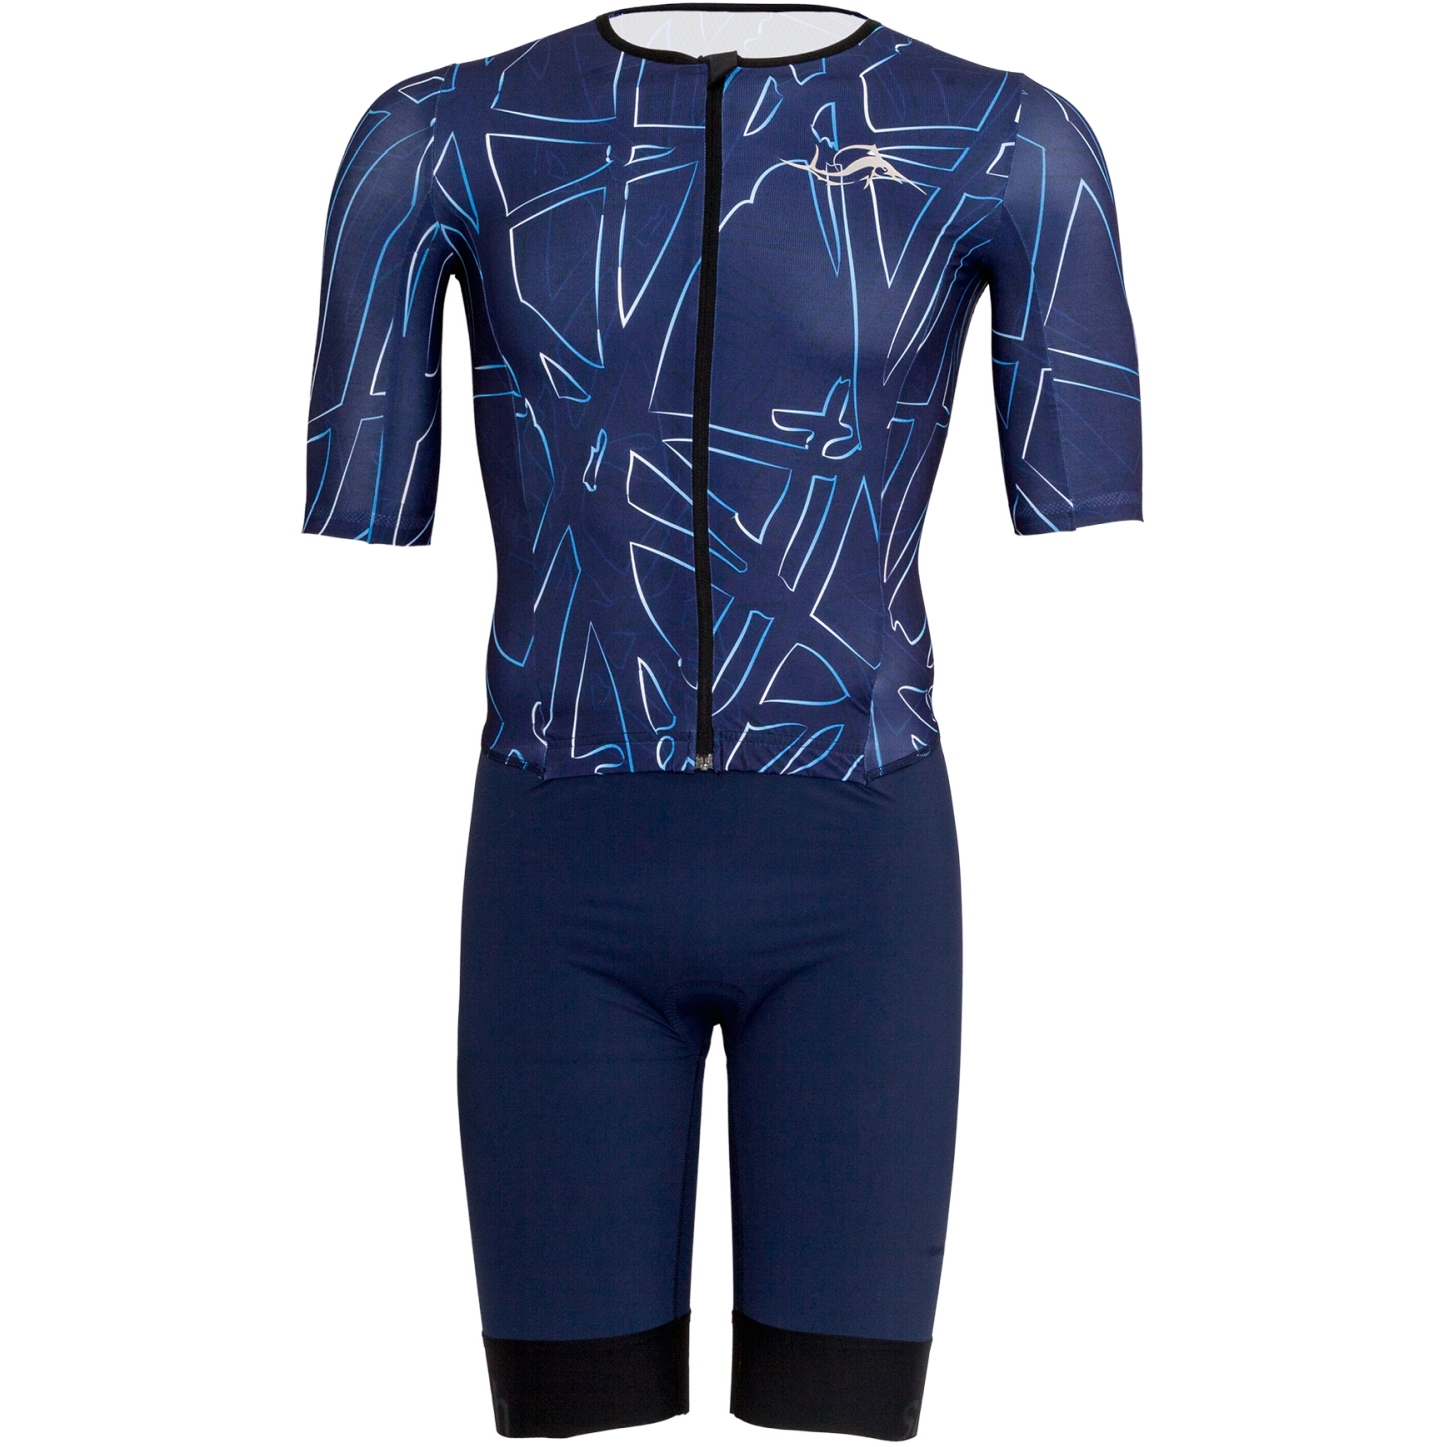 Bild von sailfish Aerosuit Perform Triathlon-Einteiler Herren - blau